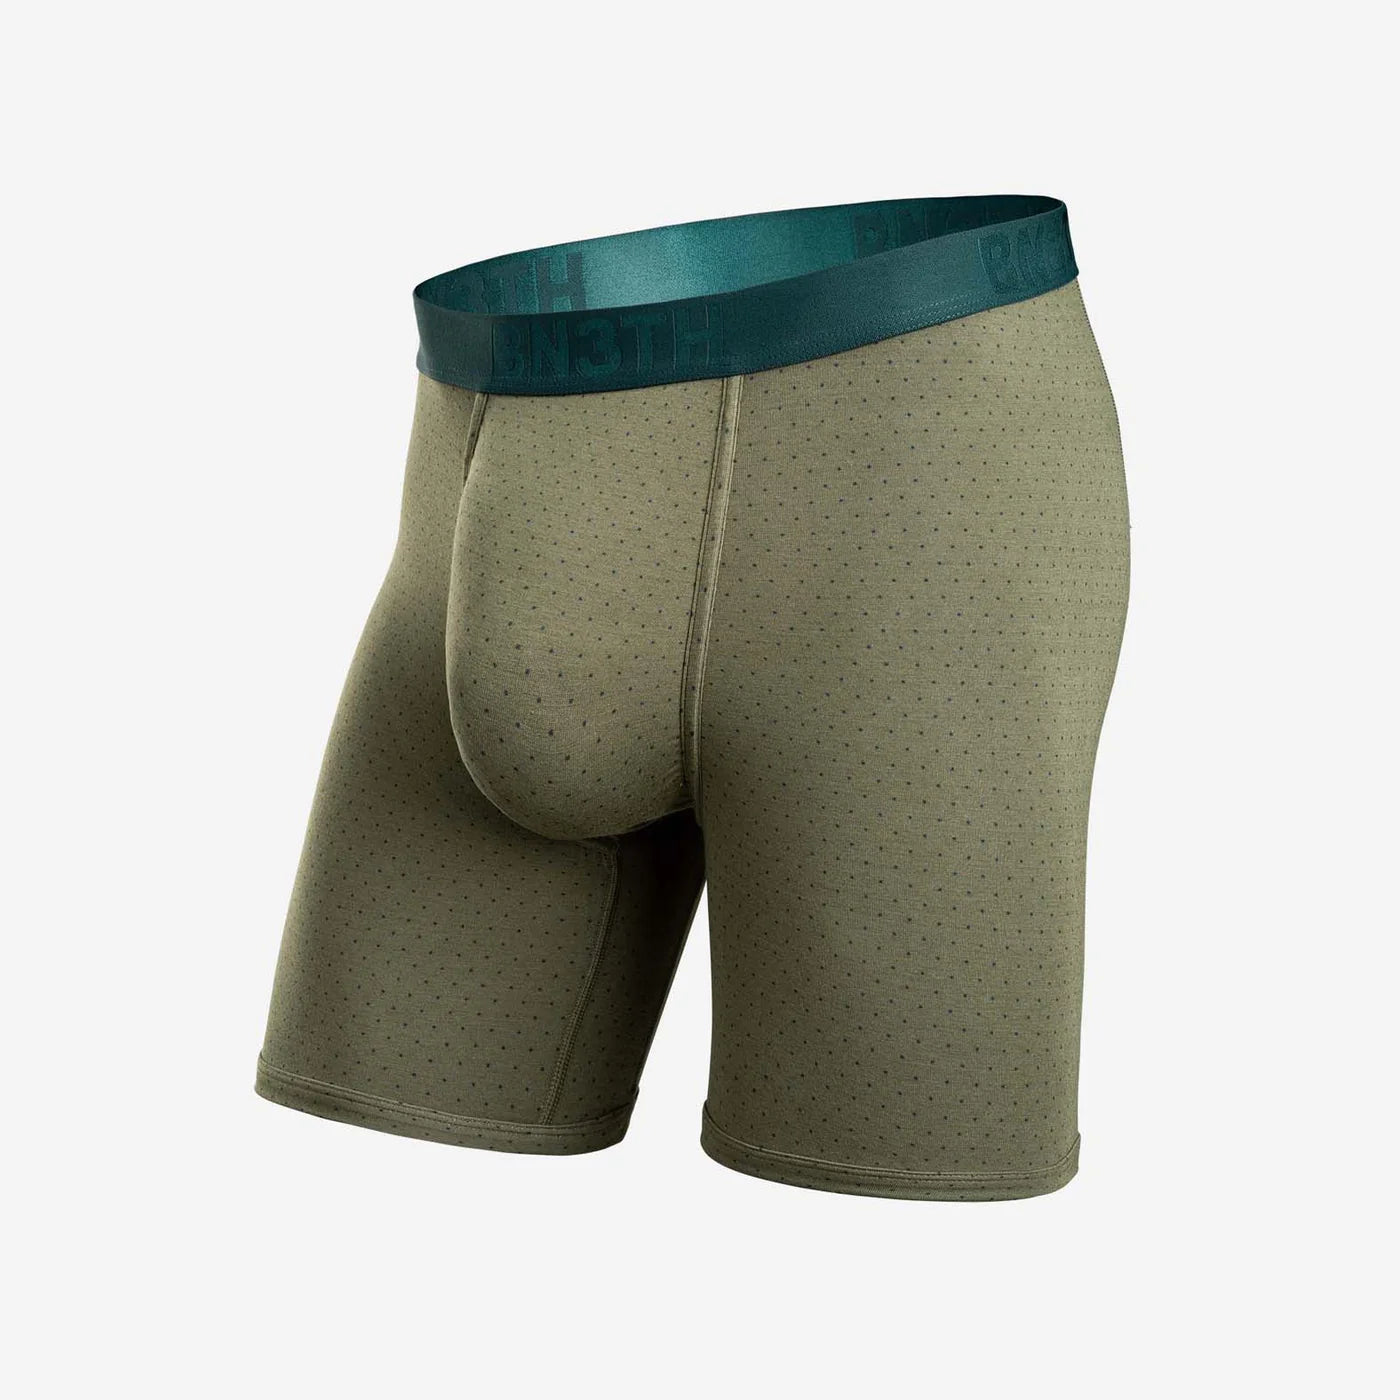 BN3TH by MyPakage Men's Entourage Boxer Brief Underwear Cosmos Teal NWT